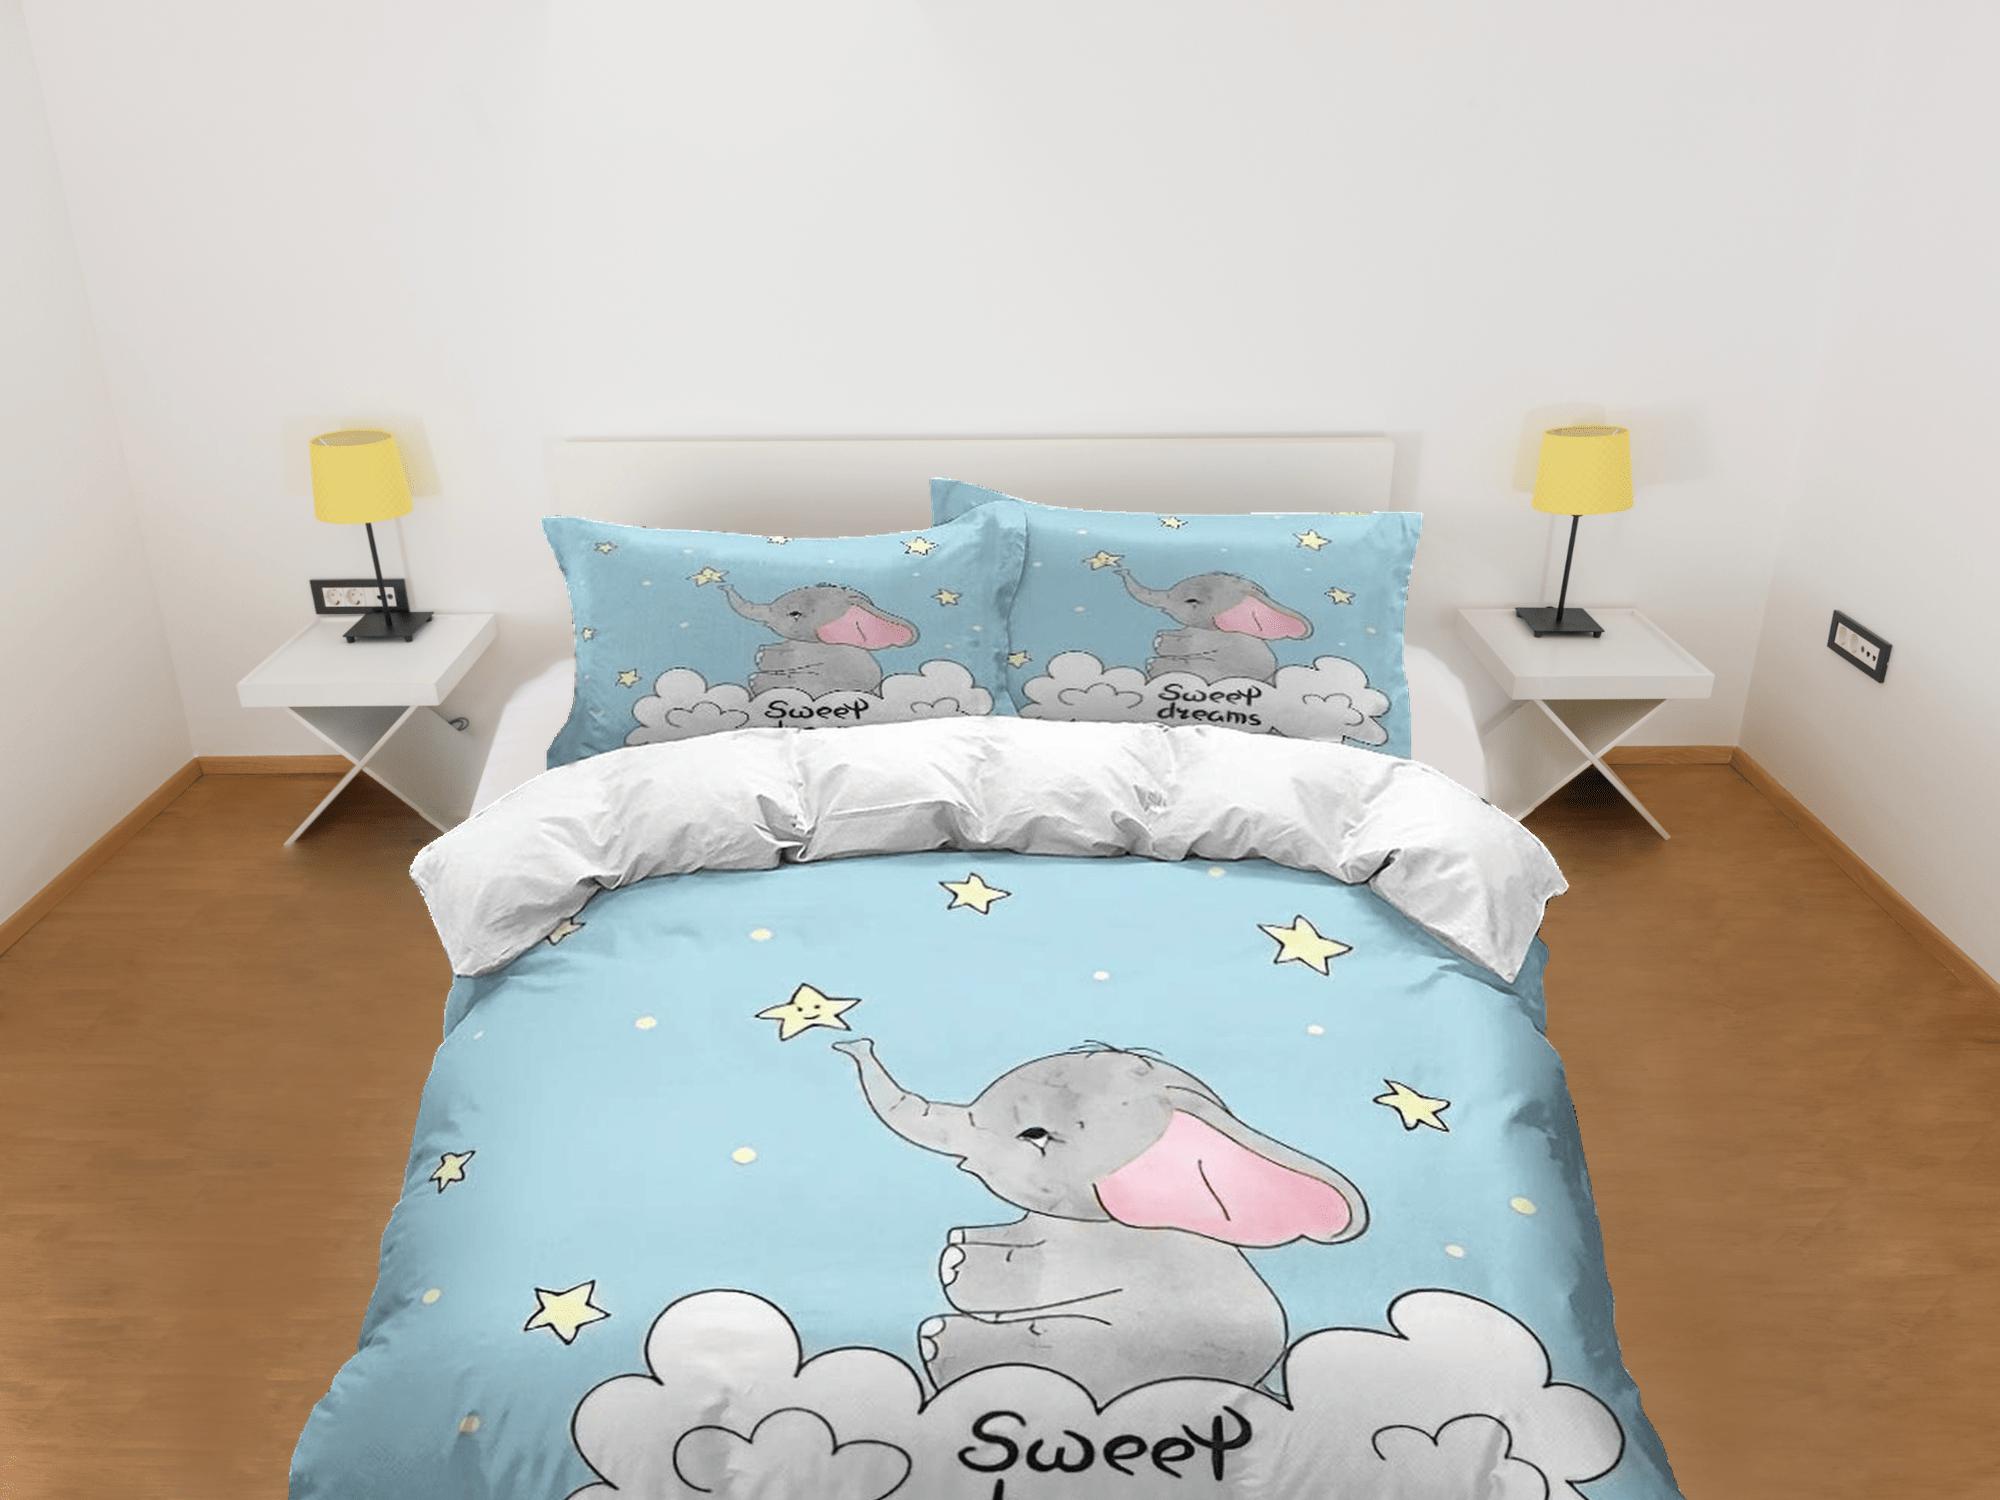 daintyduvet Sweet dreams elephant light blue bedding cute duvet cover set, kids bedding full, nursery bed decor, elephant baby shower, toddler bedding